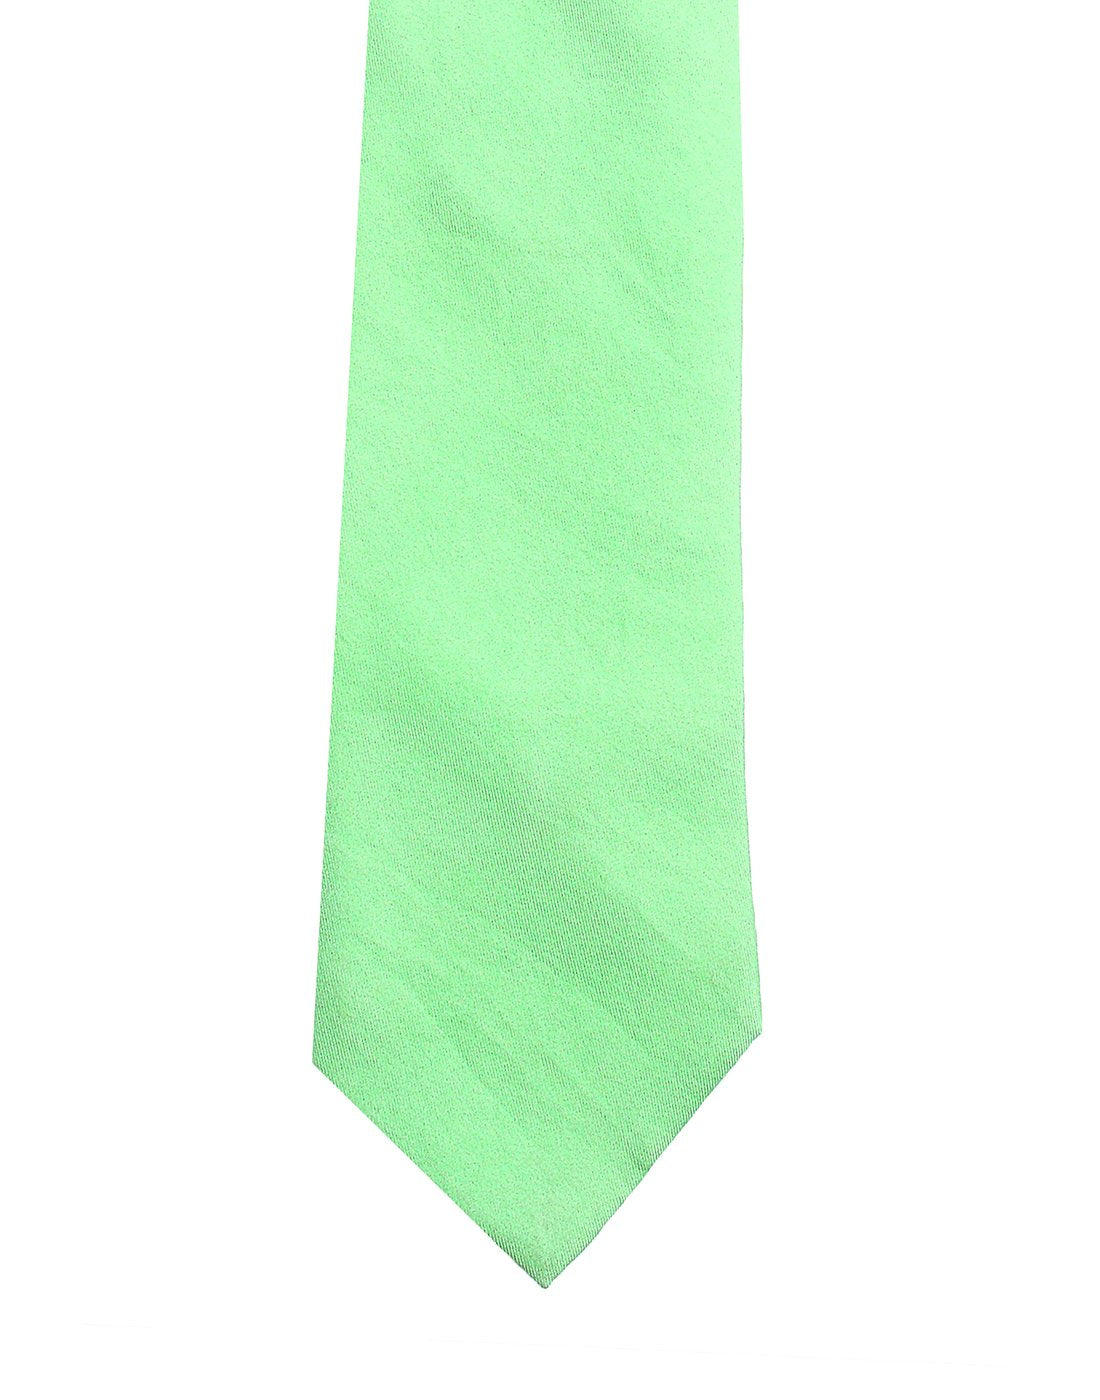 Chokore Sea Green Twill Silk Tie - Solids line